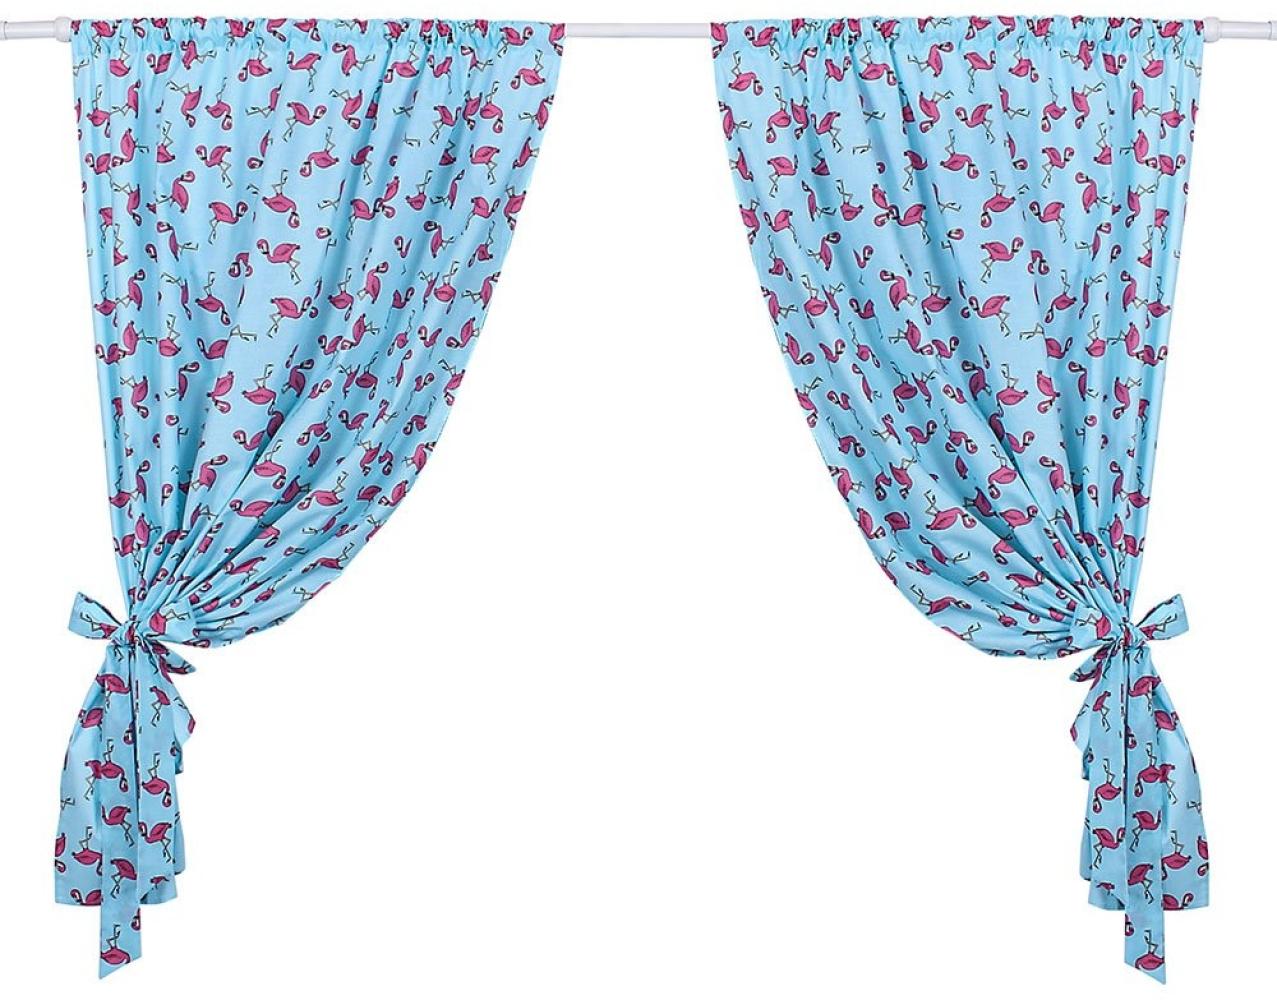 LULANDO Kinderzimmer Vorhänge Kindervorhänge Gardinen (155 cm x 120 cm) mit zwei Schleifenbändern zum Verzieren. In kinderfreundlichen Motiven erhältlich. Farbe: Flamingos Blue Bild 1